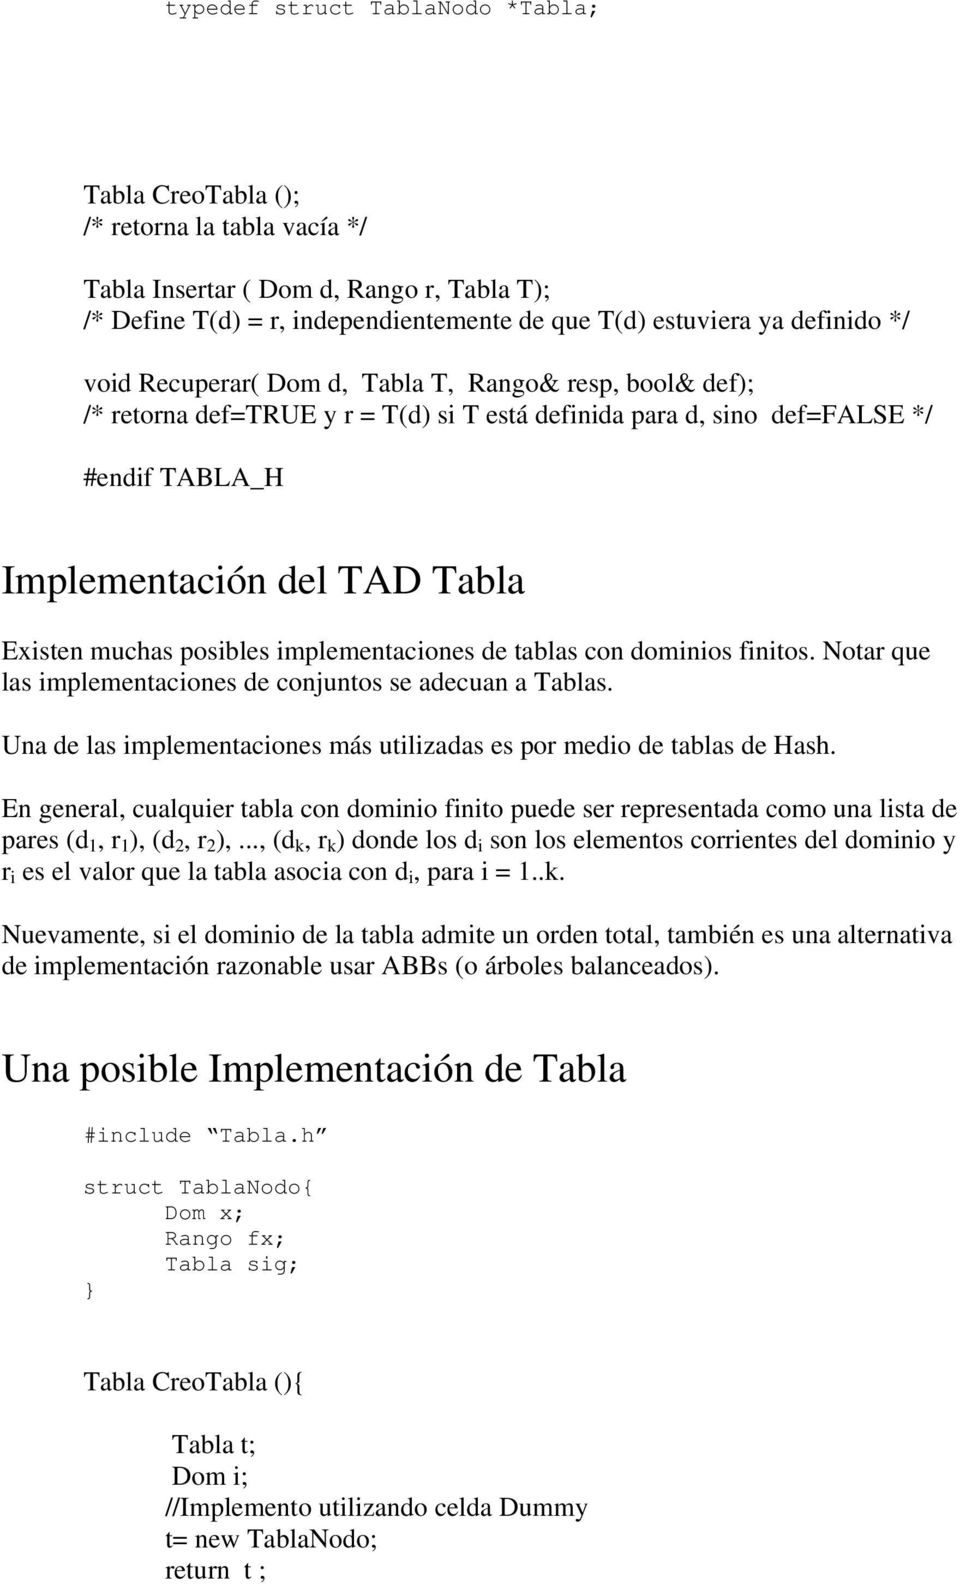 posibles implementaciones de tablas con dominios finitos. Notar que las implementaciones de conjuntos se adecuan a Tablas. Una de las implementaciones más utilizadas es por medio de tablas de Hash.